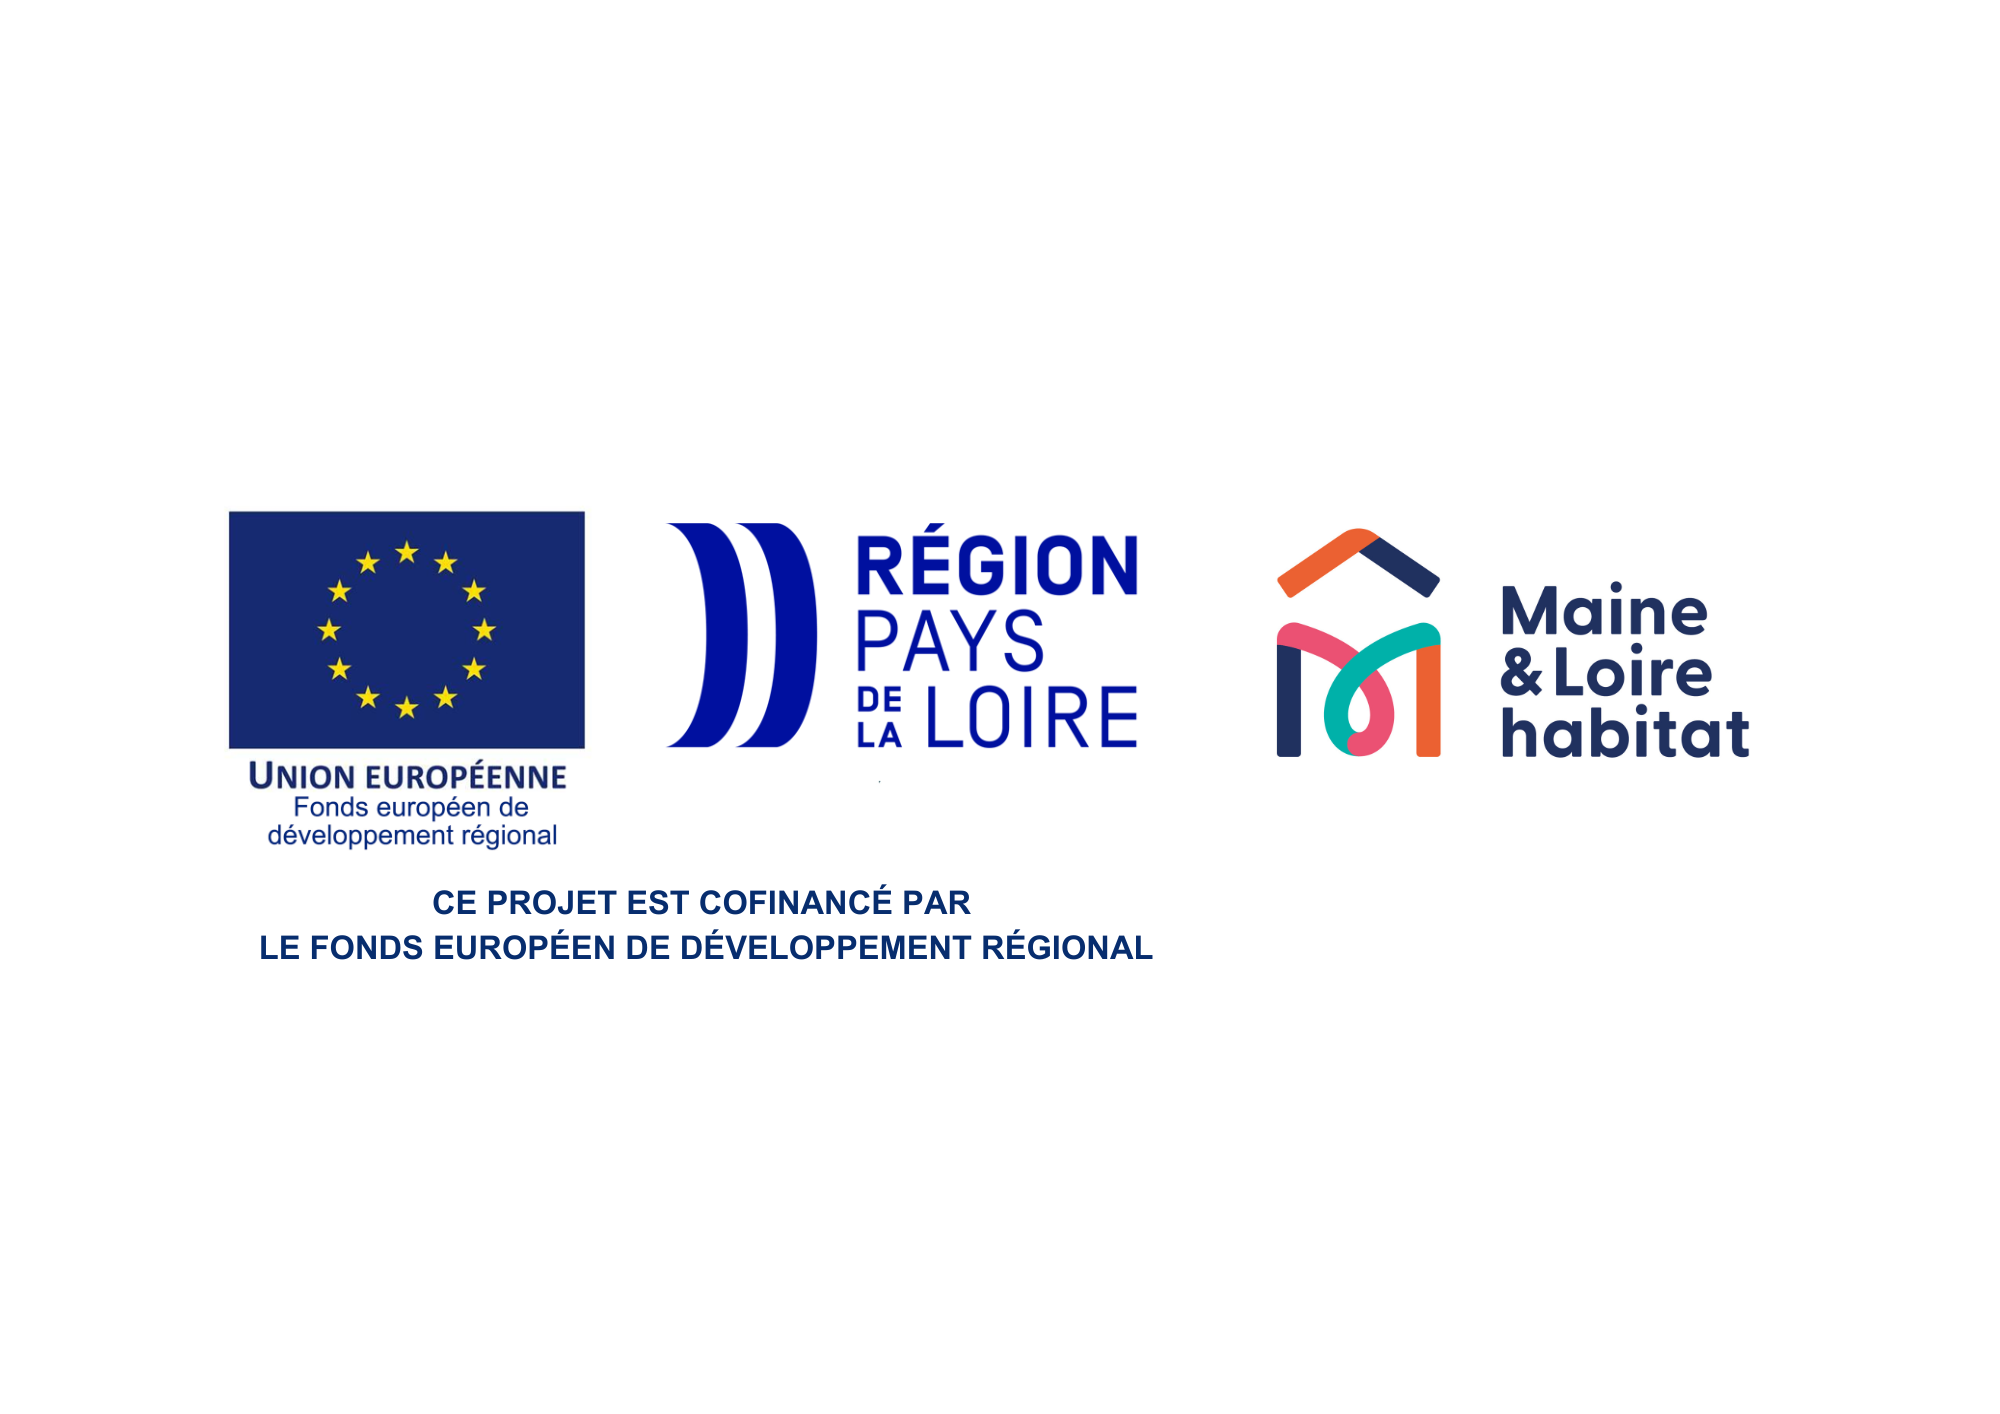 Logos du FEDER, de la région pays de la loire et de Maine-et-Loire habitat